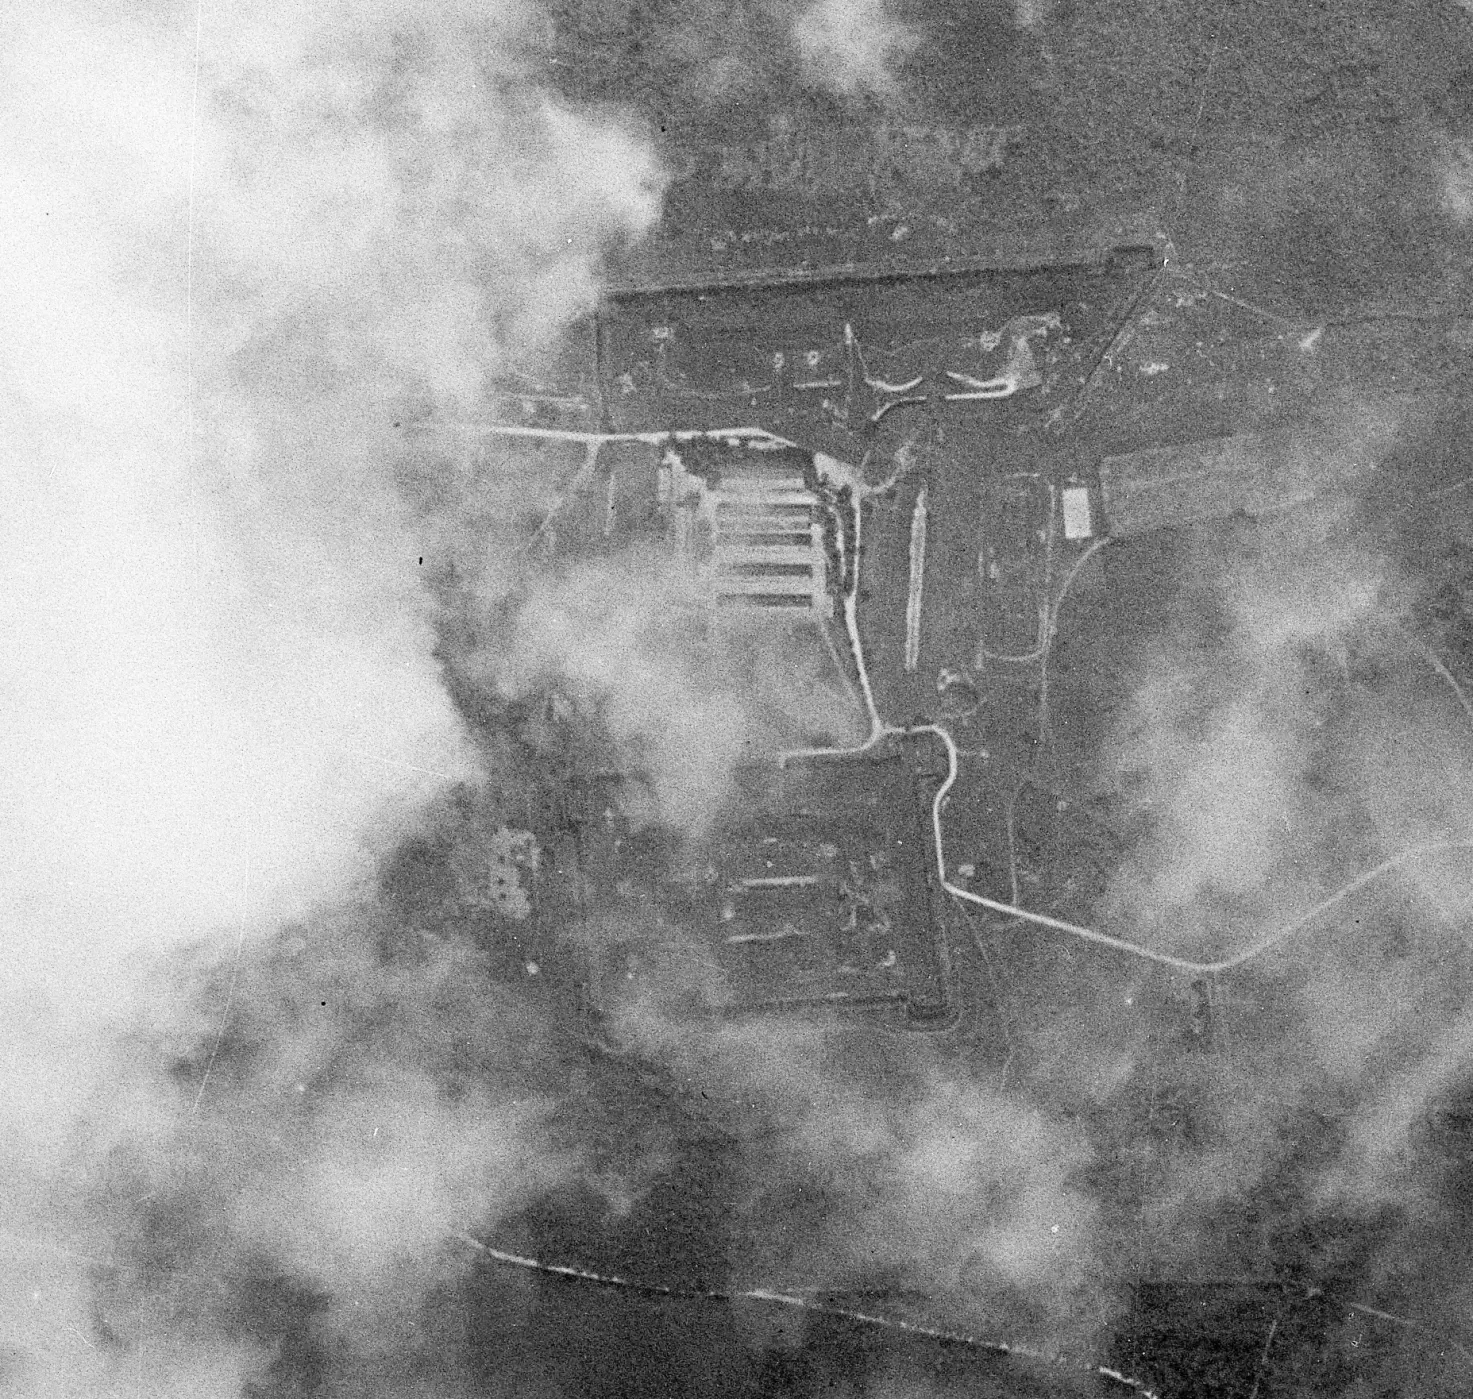 Ligne Maginot - FORT DU LOMONT - (PC de Secteur) - Fort du Lomont en 1940
A noter les constructions au milieu. Il s'agit du casernement de temps de paix, prévu pour loger 161 hommes et servir de magasin d'artillerie, écurie...
